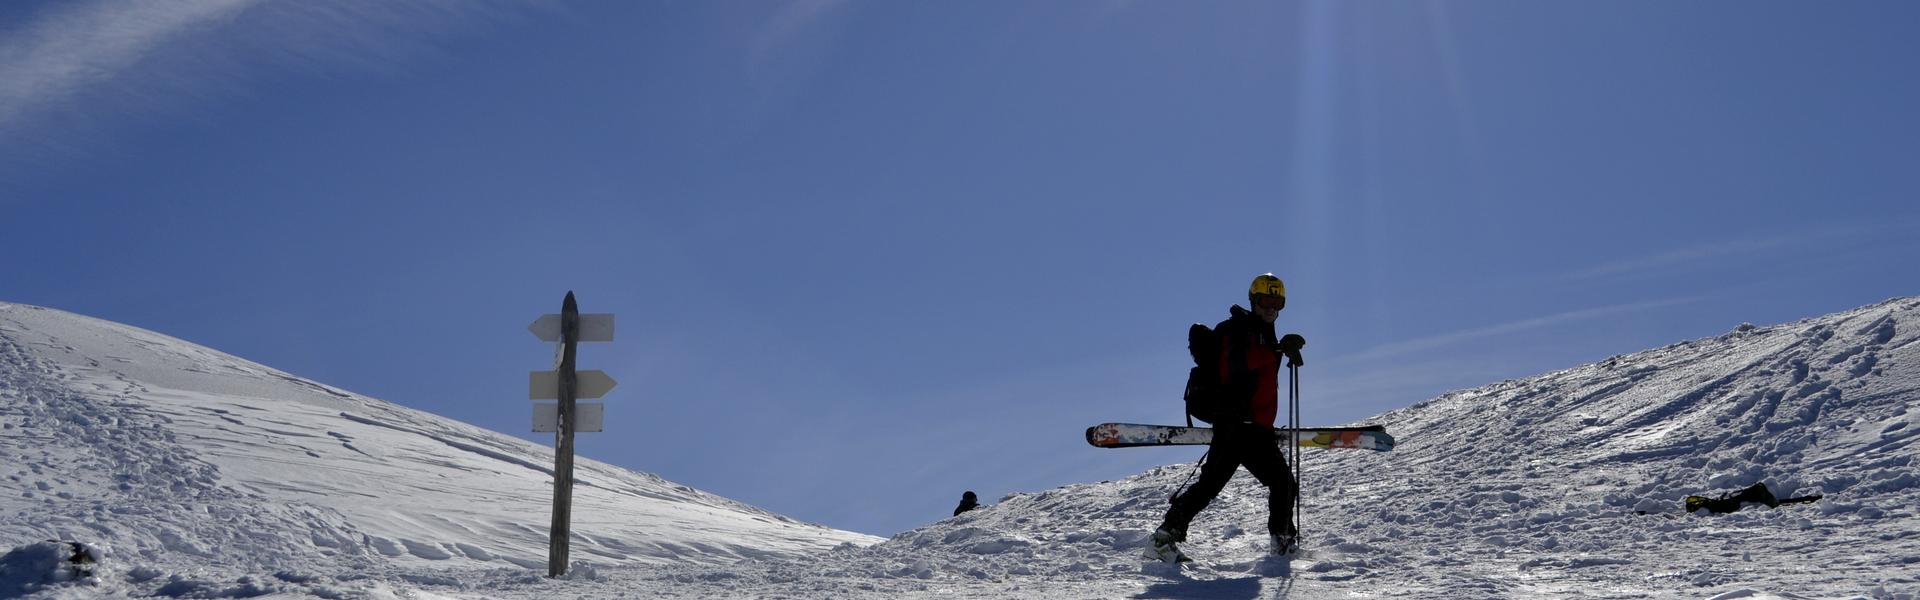 kolaż dwóch zdjęć - turysta na szlaku i zimowy krajobraz gór